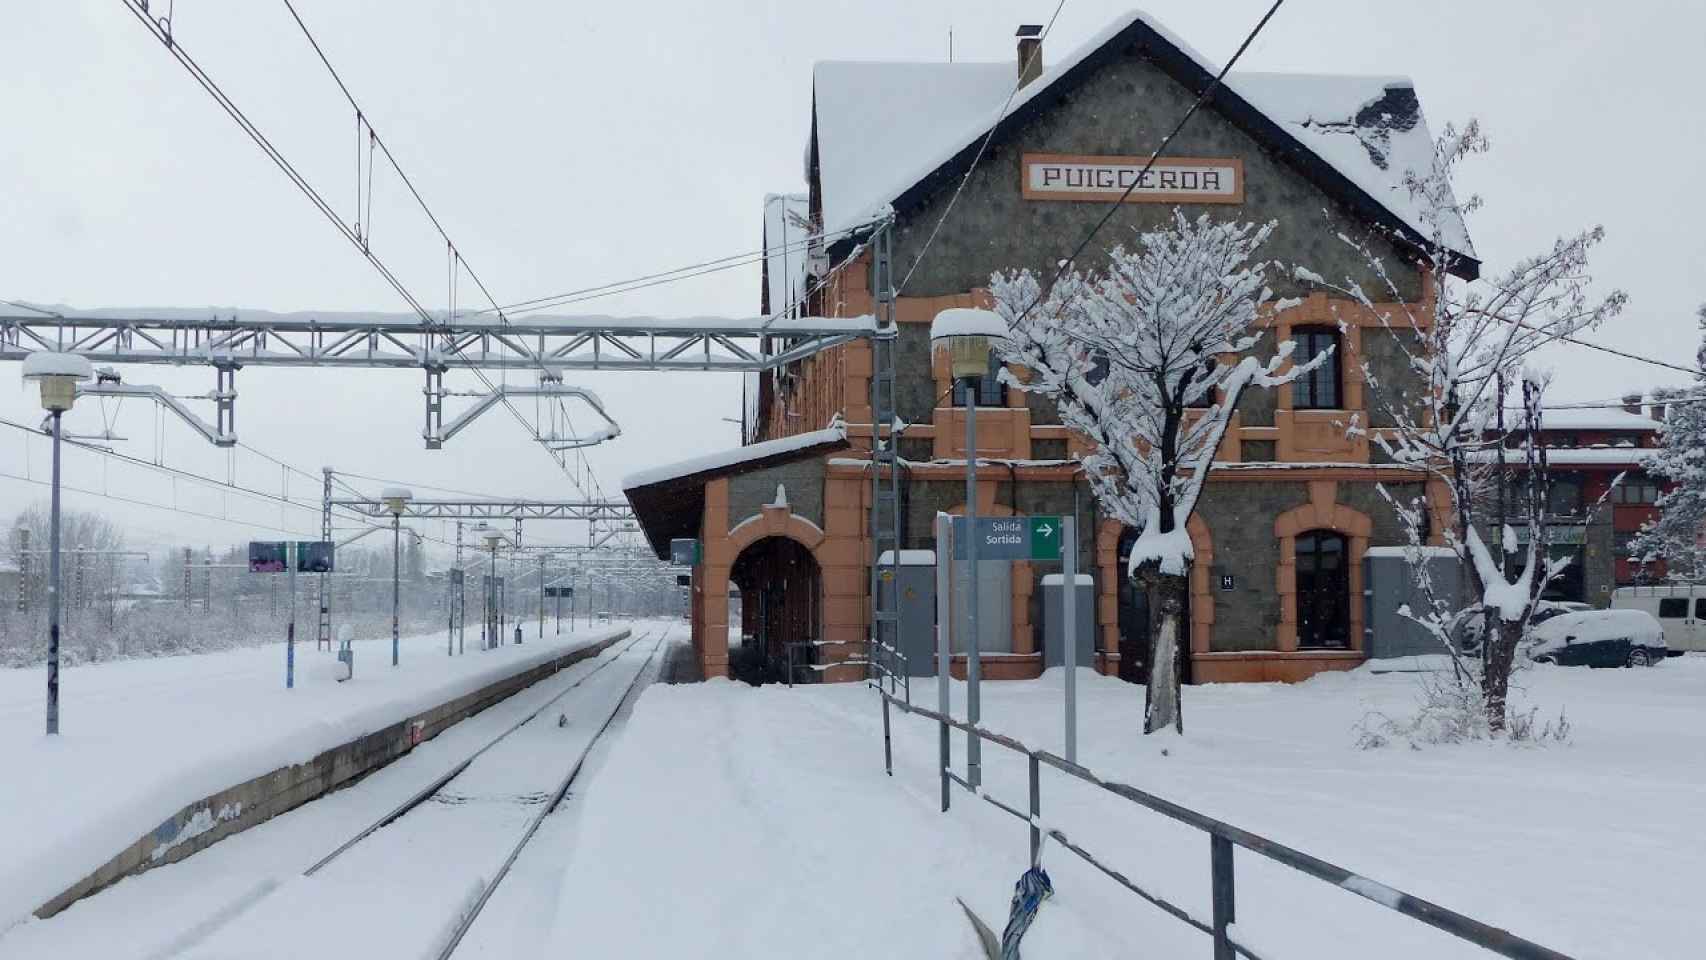 Estación de tren de Puigcerdà cubierta de nieve, en una imagen de archivo